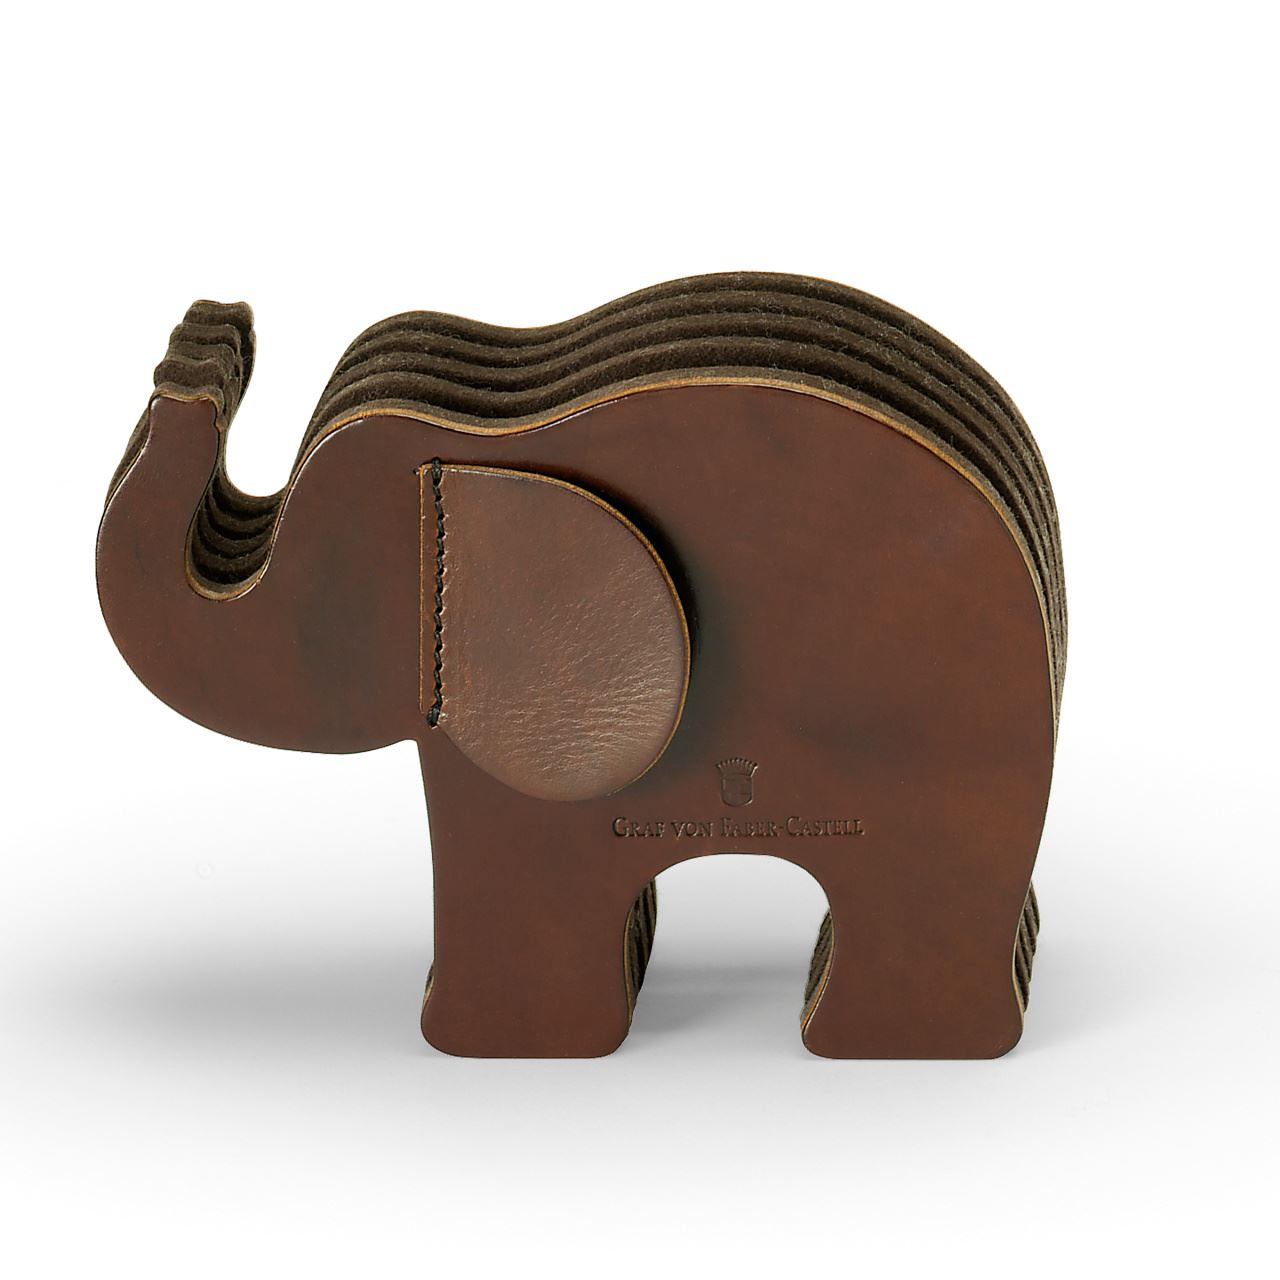 Graf-von-Faber-Castell - Elefante grande, piel de becerro, marrón oscuro